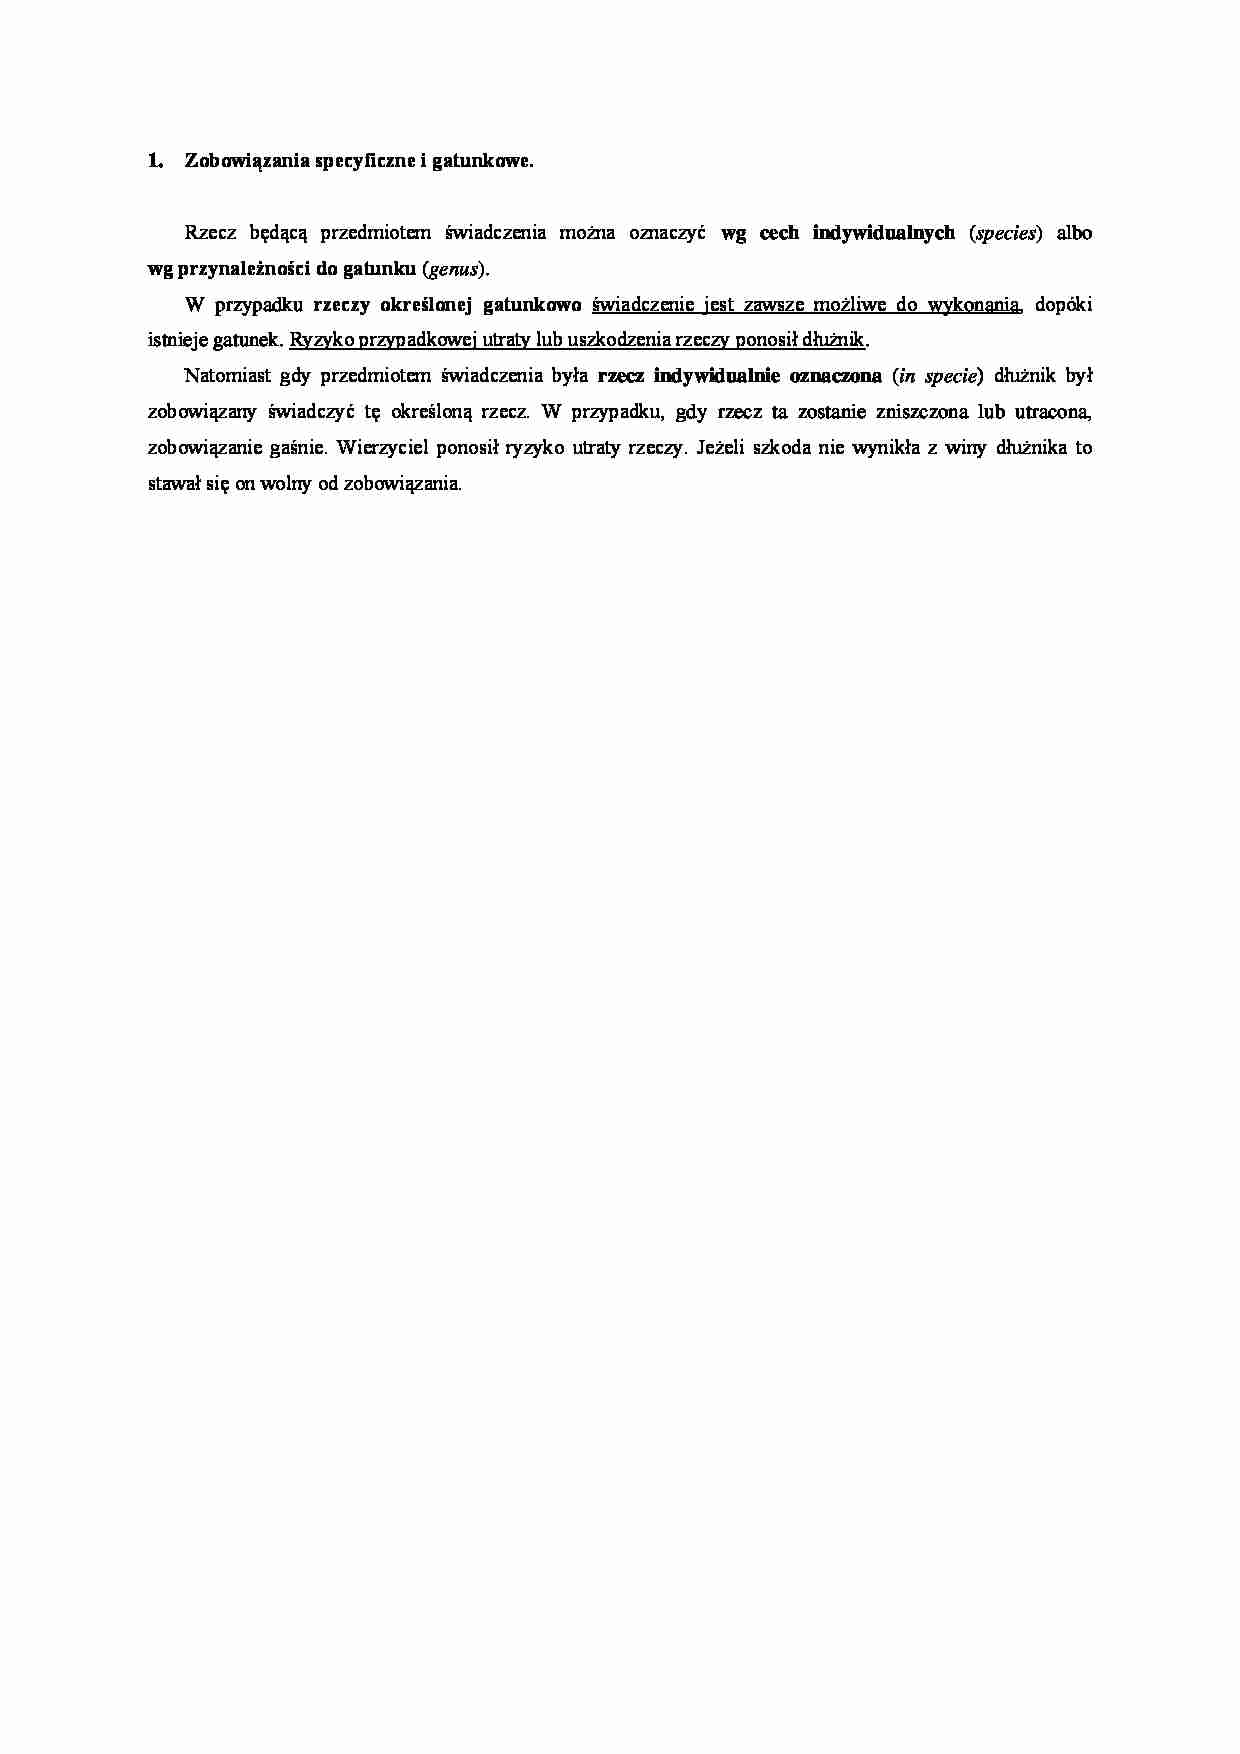 Zobowiązanie specyficzne i gatunkowe- opracowanie - strona 1